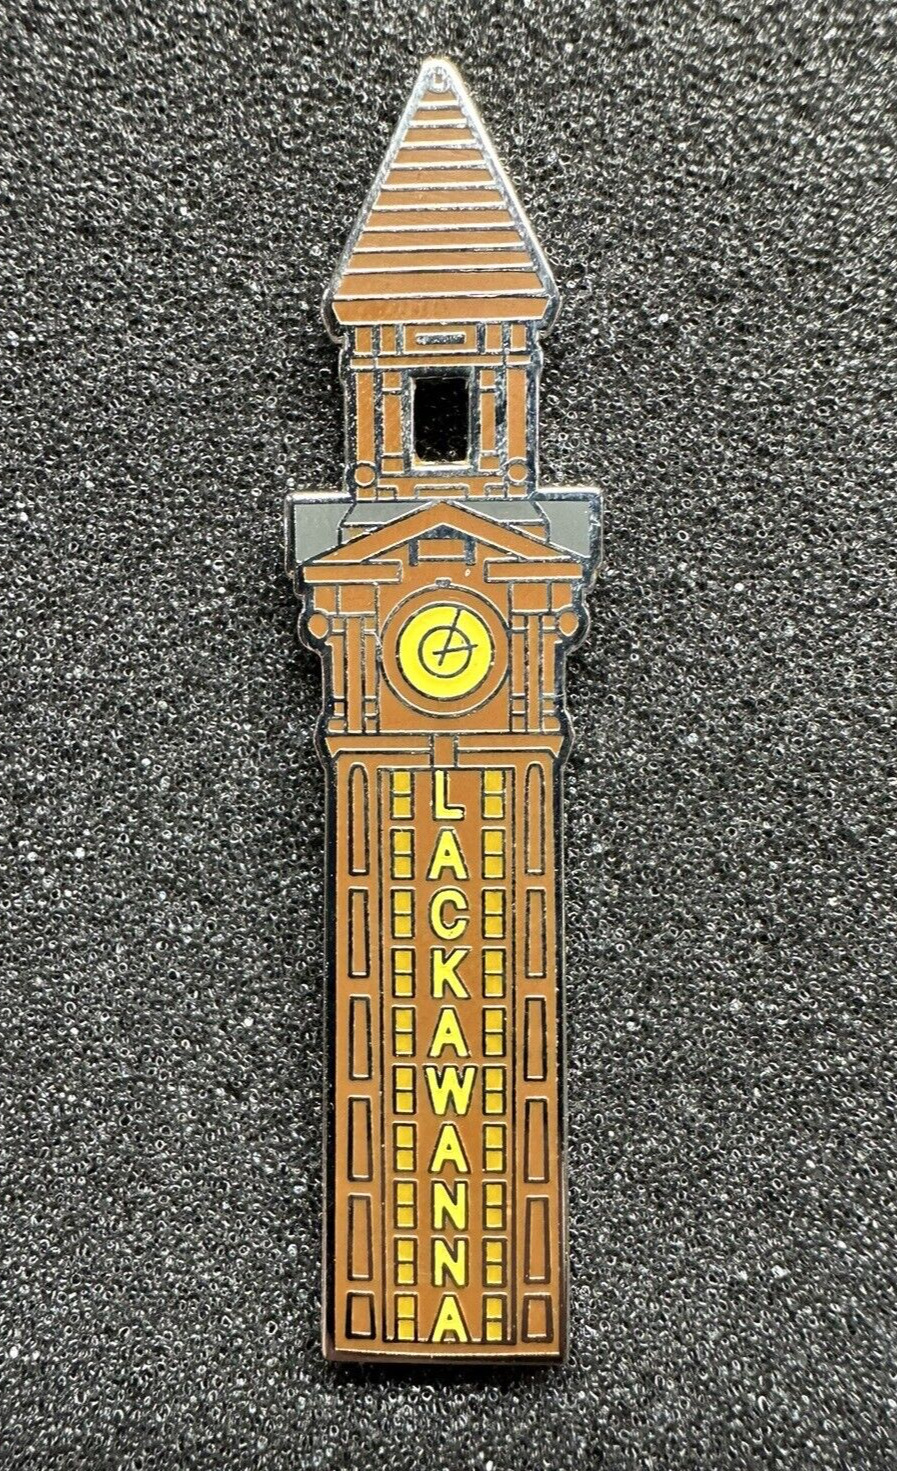 Lackawanna Railroad Hoboken Clock Tower DL&W RR Enamel Pin